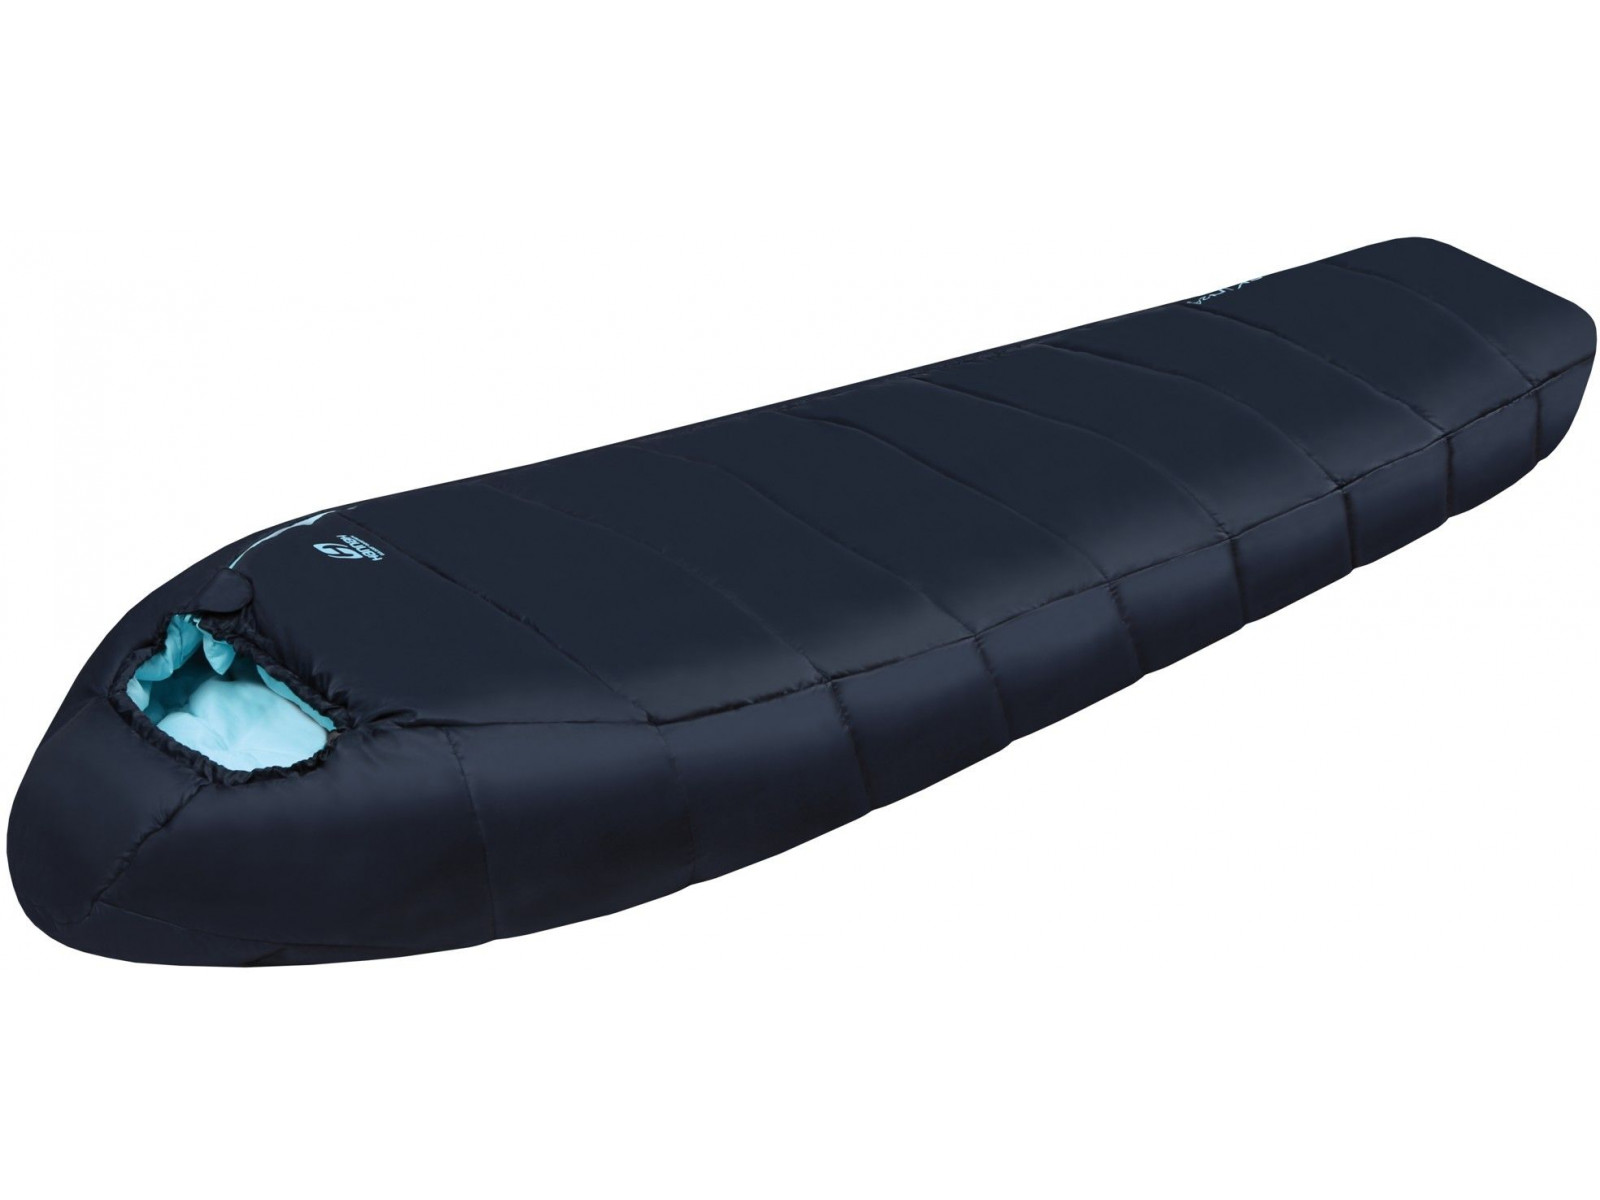 launch rib meteor Ladies camping sleeping bag TREK W 240 midnight navy (aqua splash)